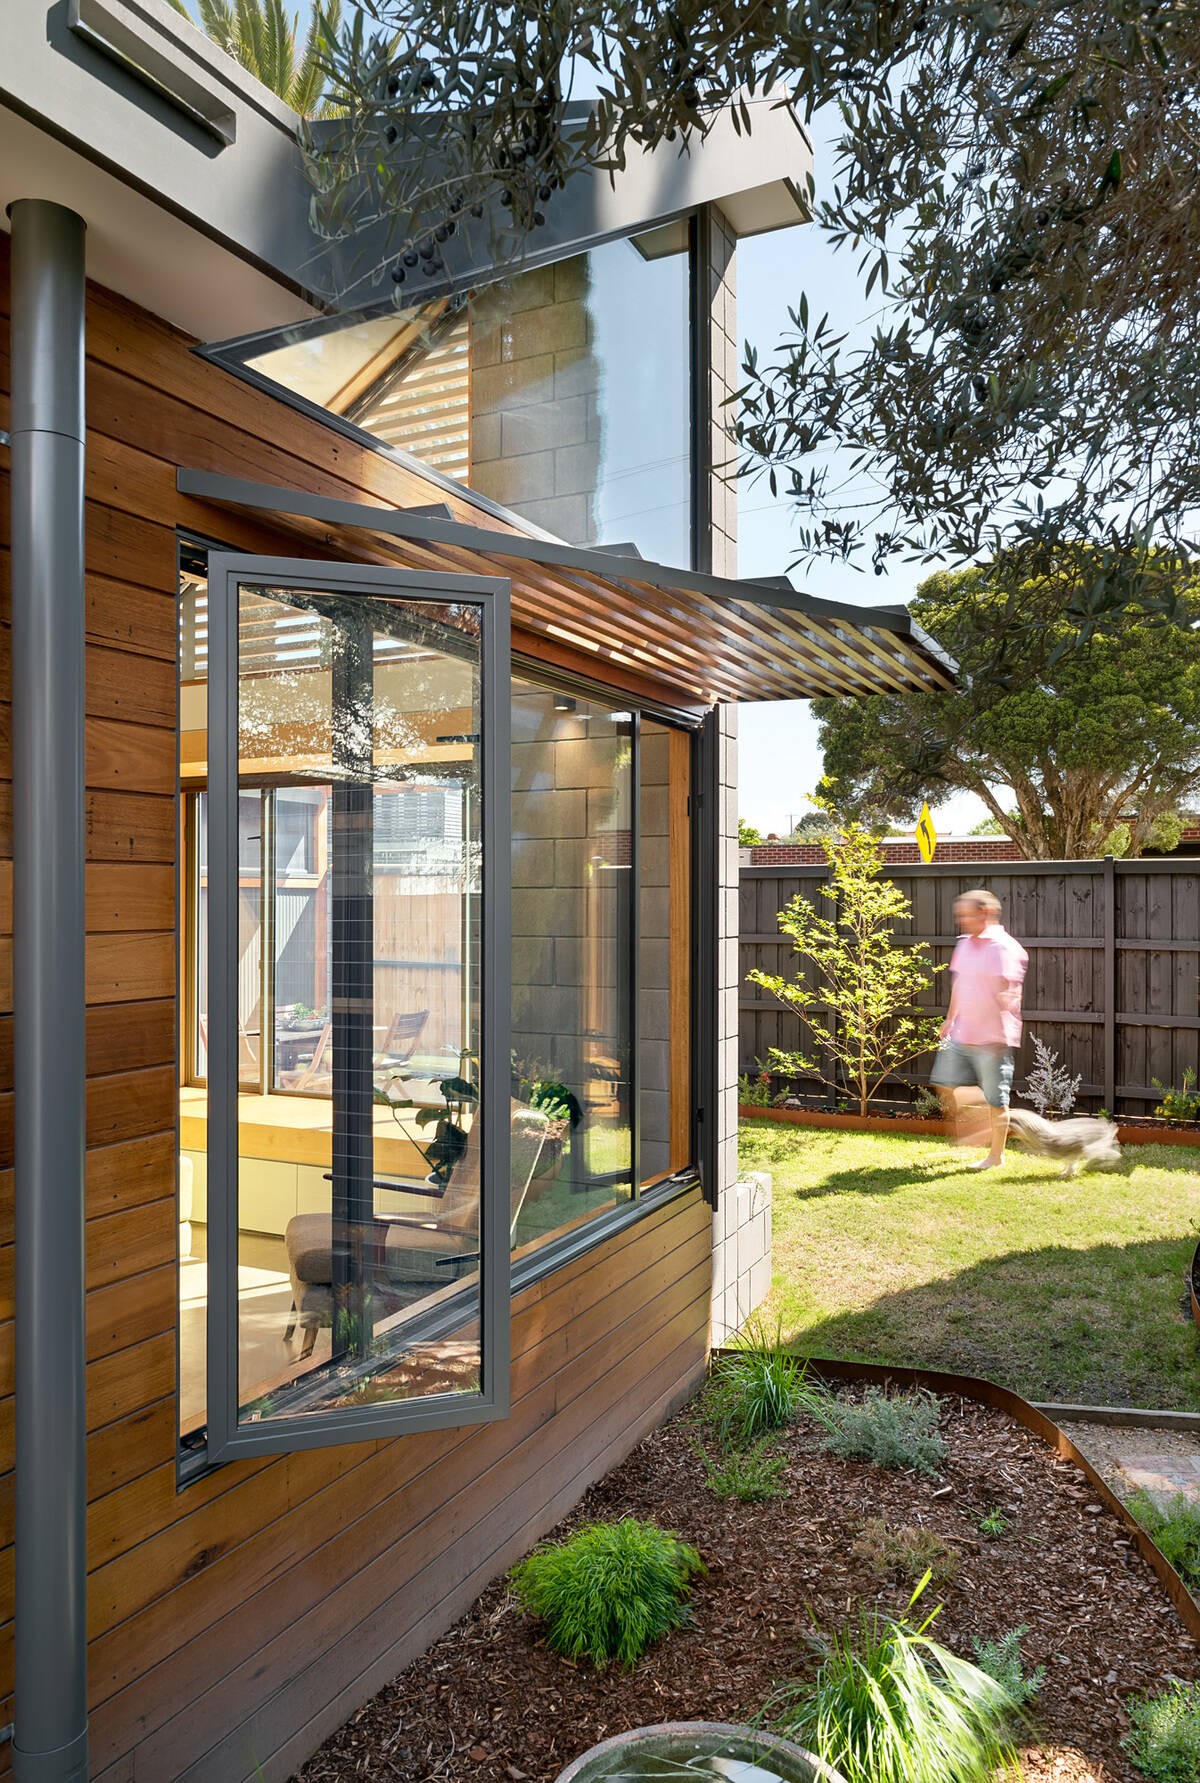 
Những cánh cửa sổ giúp cho ánh nắng dễ dàng đi vào bên trong nhà
